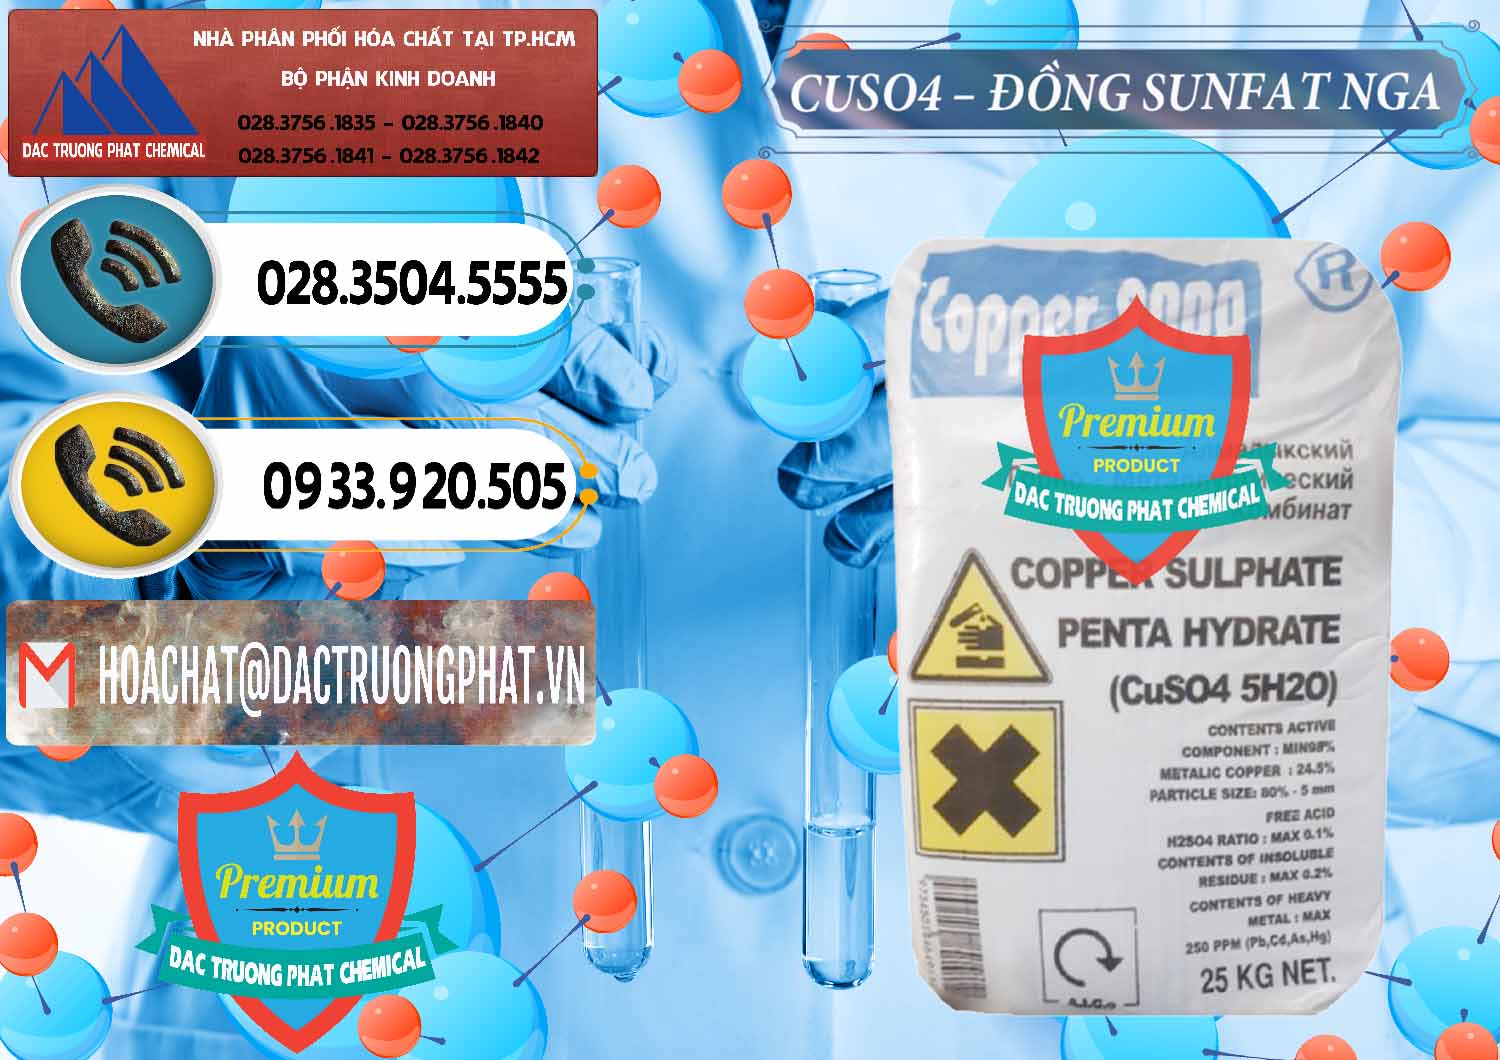 Chuyên bán _ phân phối CuSO4 – Đồng Sunfat Nga Russia - 0480 - Công ty kinh doanh và cung cấp hóa chất tại TP.HCM - hoachatdetnhuom.vn